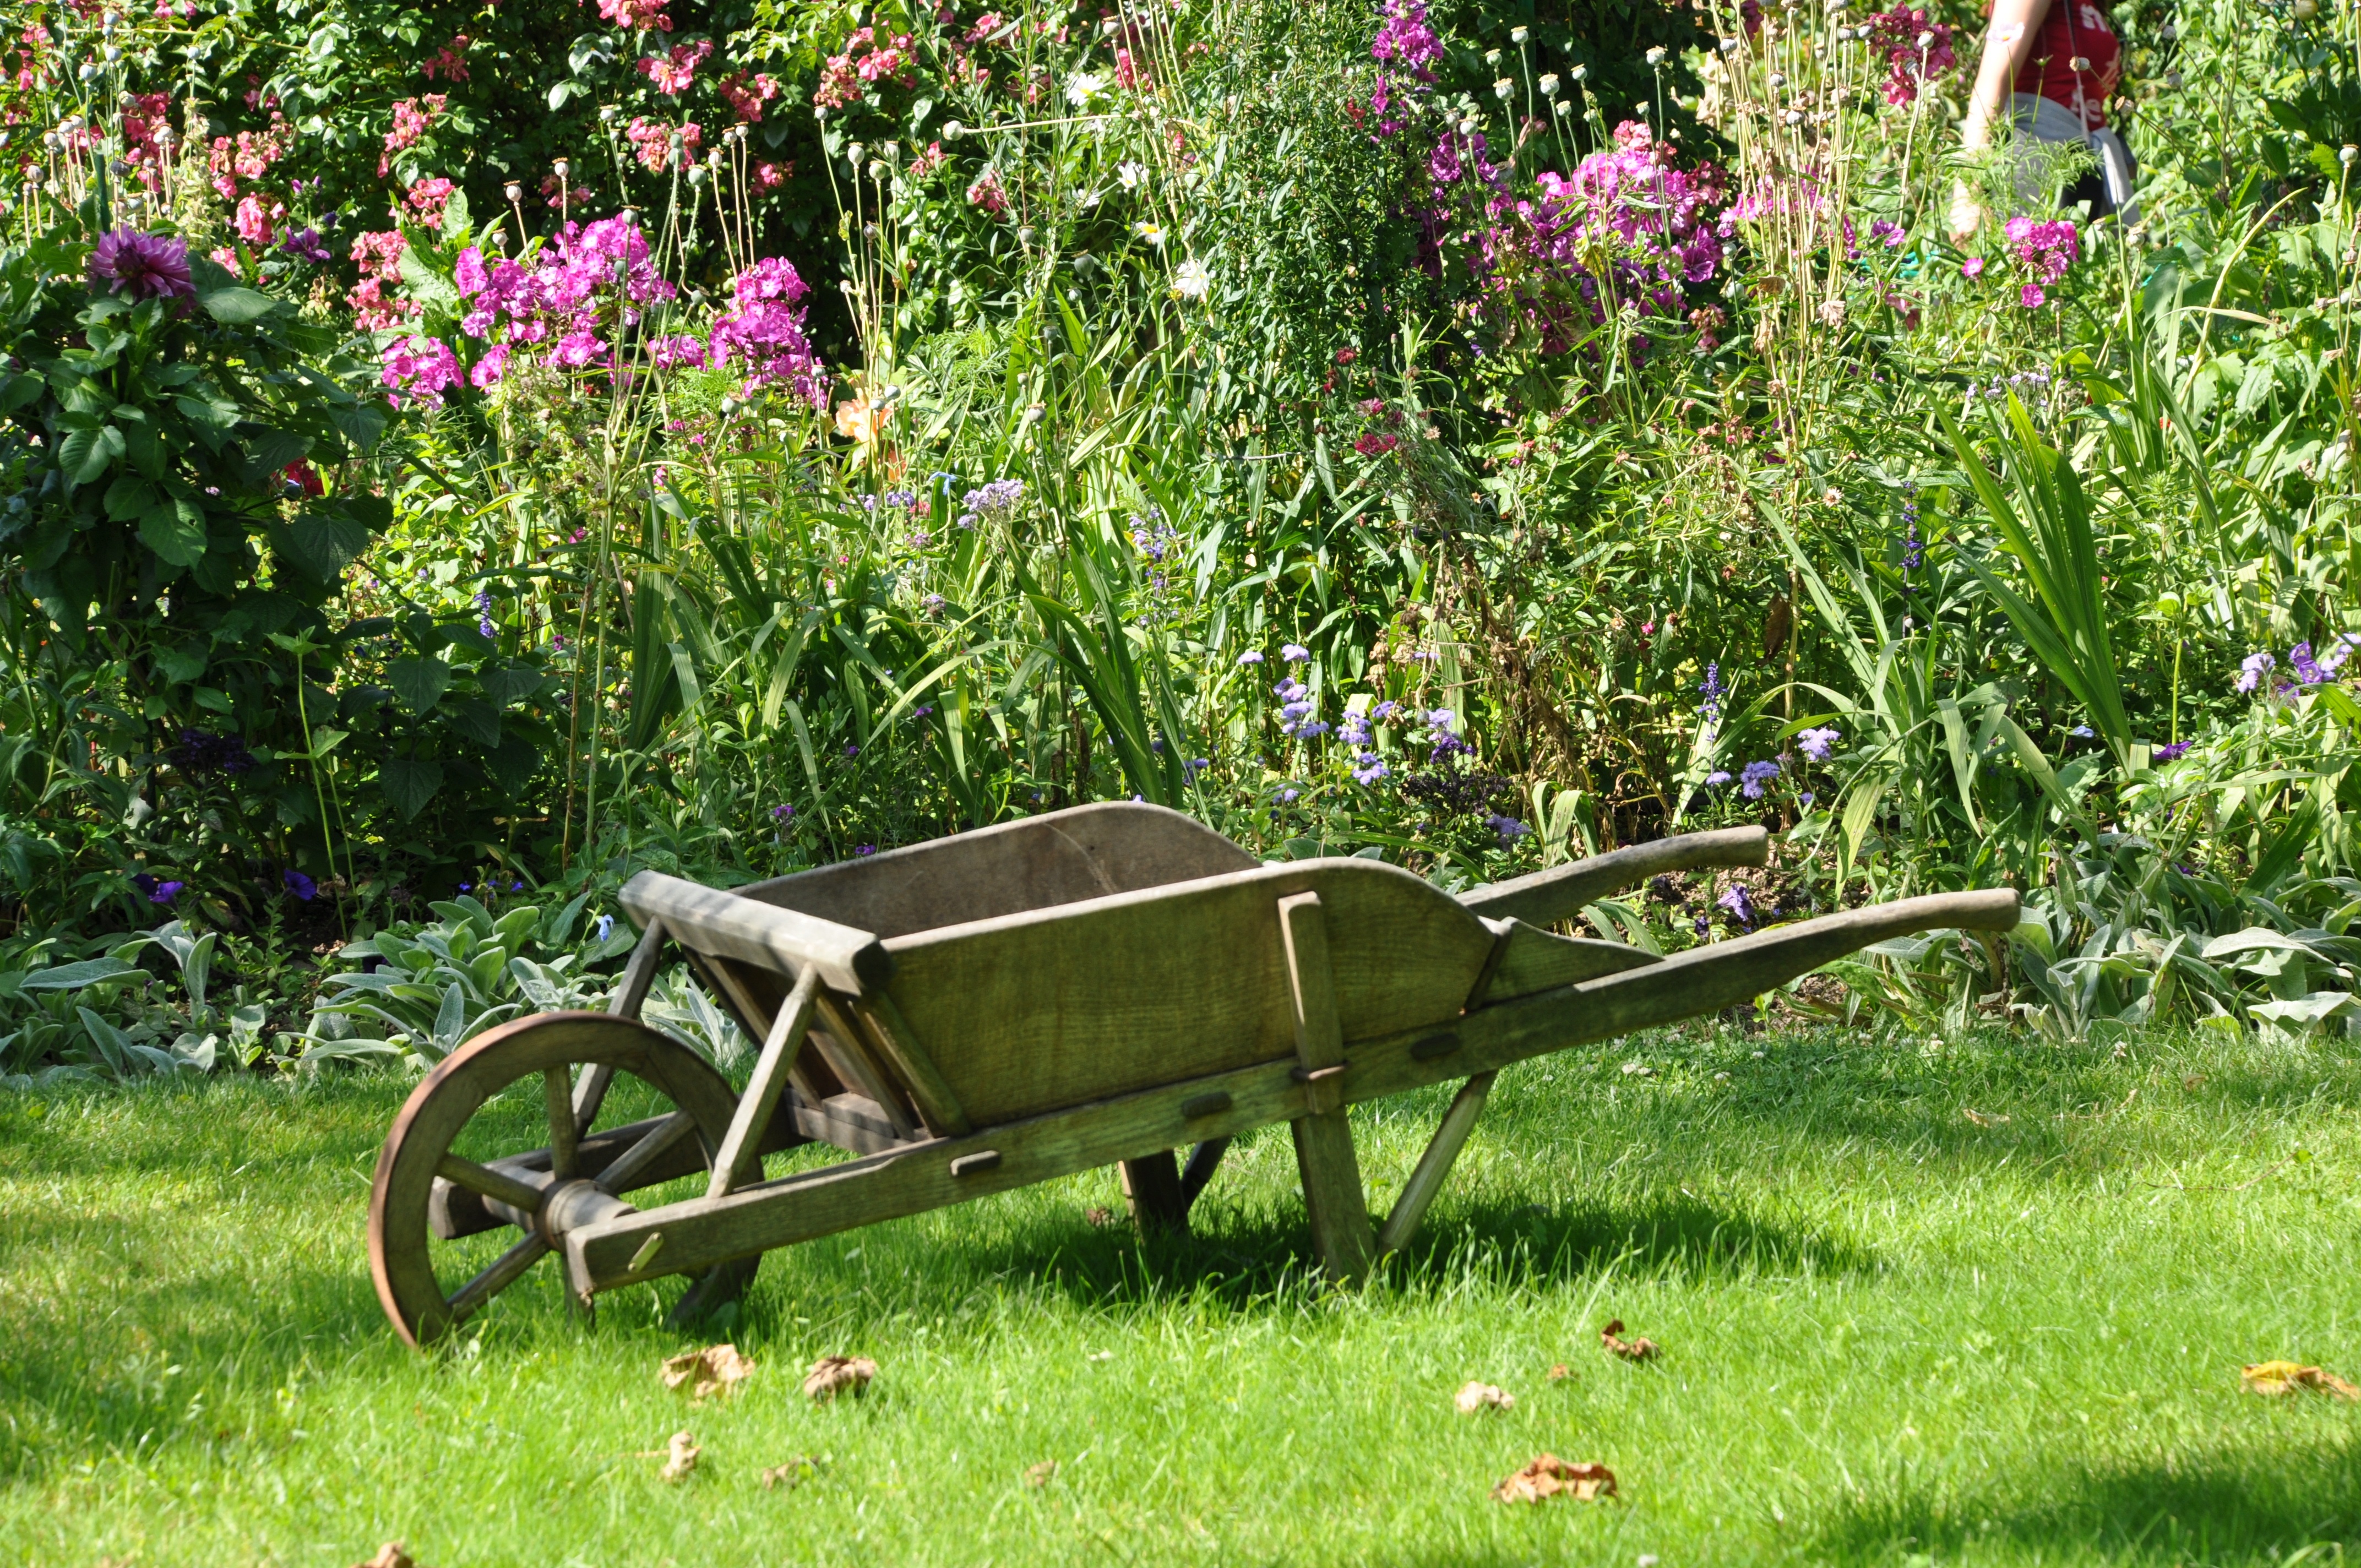 Wheelbarrow in a garden.